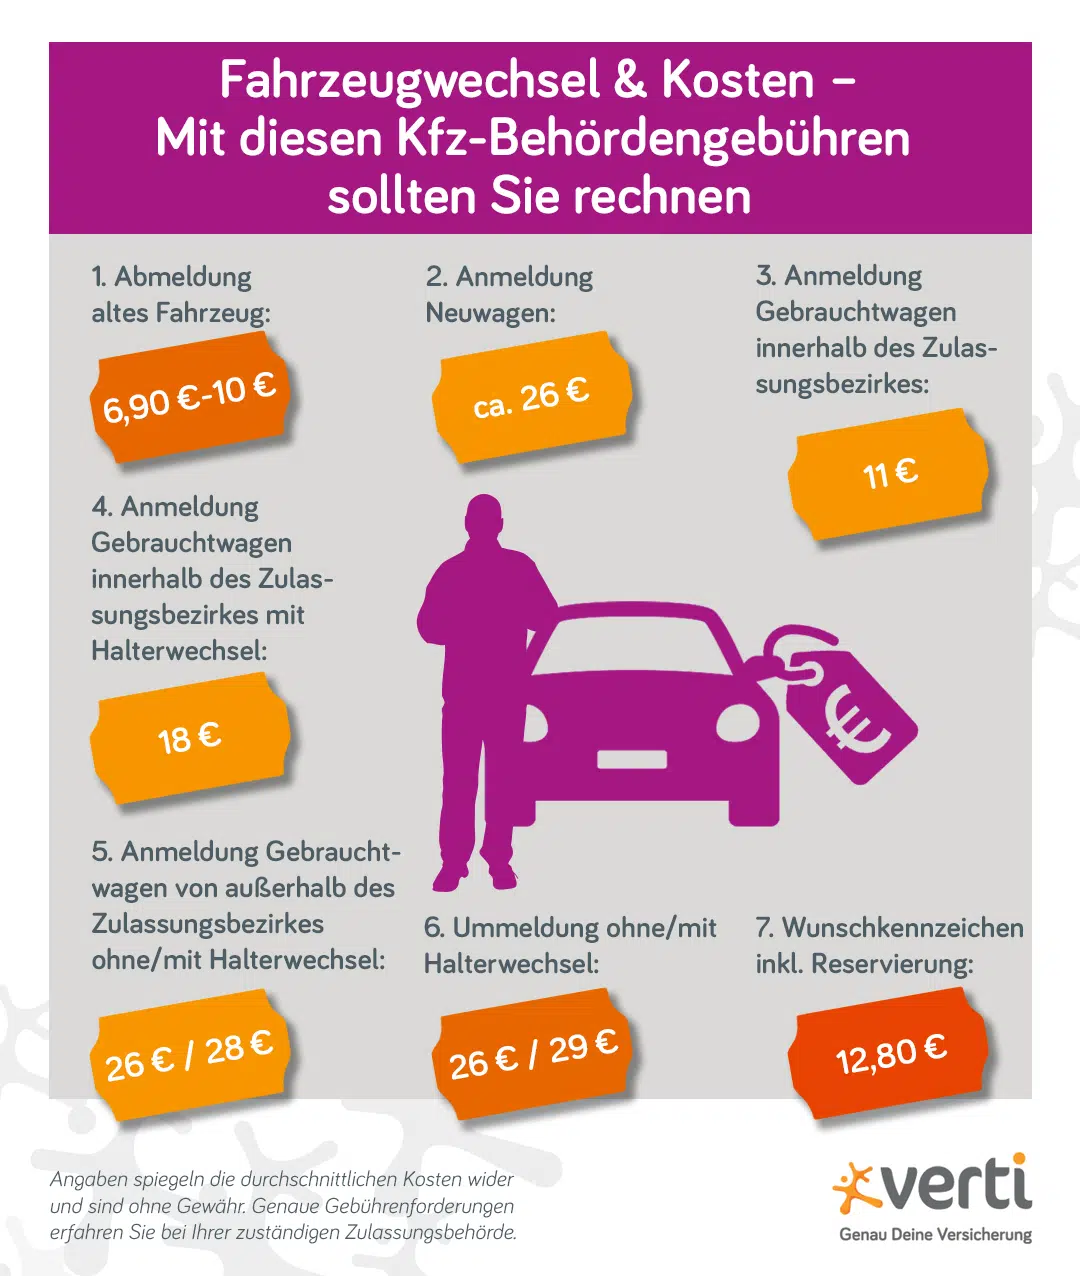 Alt-Tag: Fahrzeugwechsel: Grafik zeigt Gebührenübersicht mit durchschnittlichen Kosten für diverse Dienstleistungen der Kfz-Zulassungsstelle.